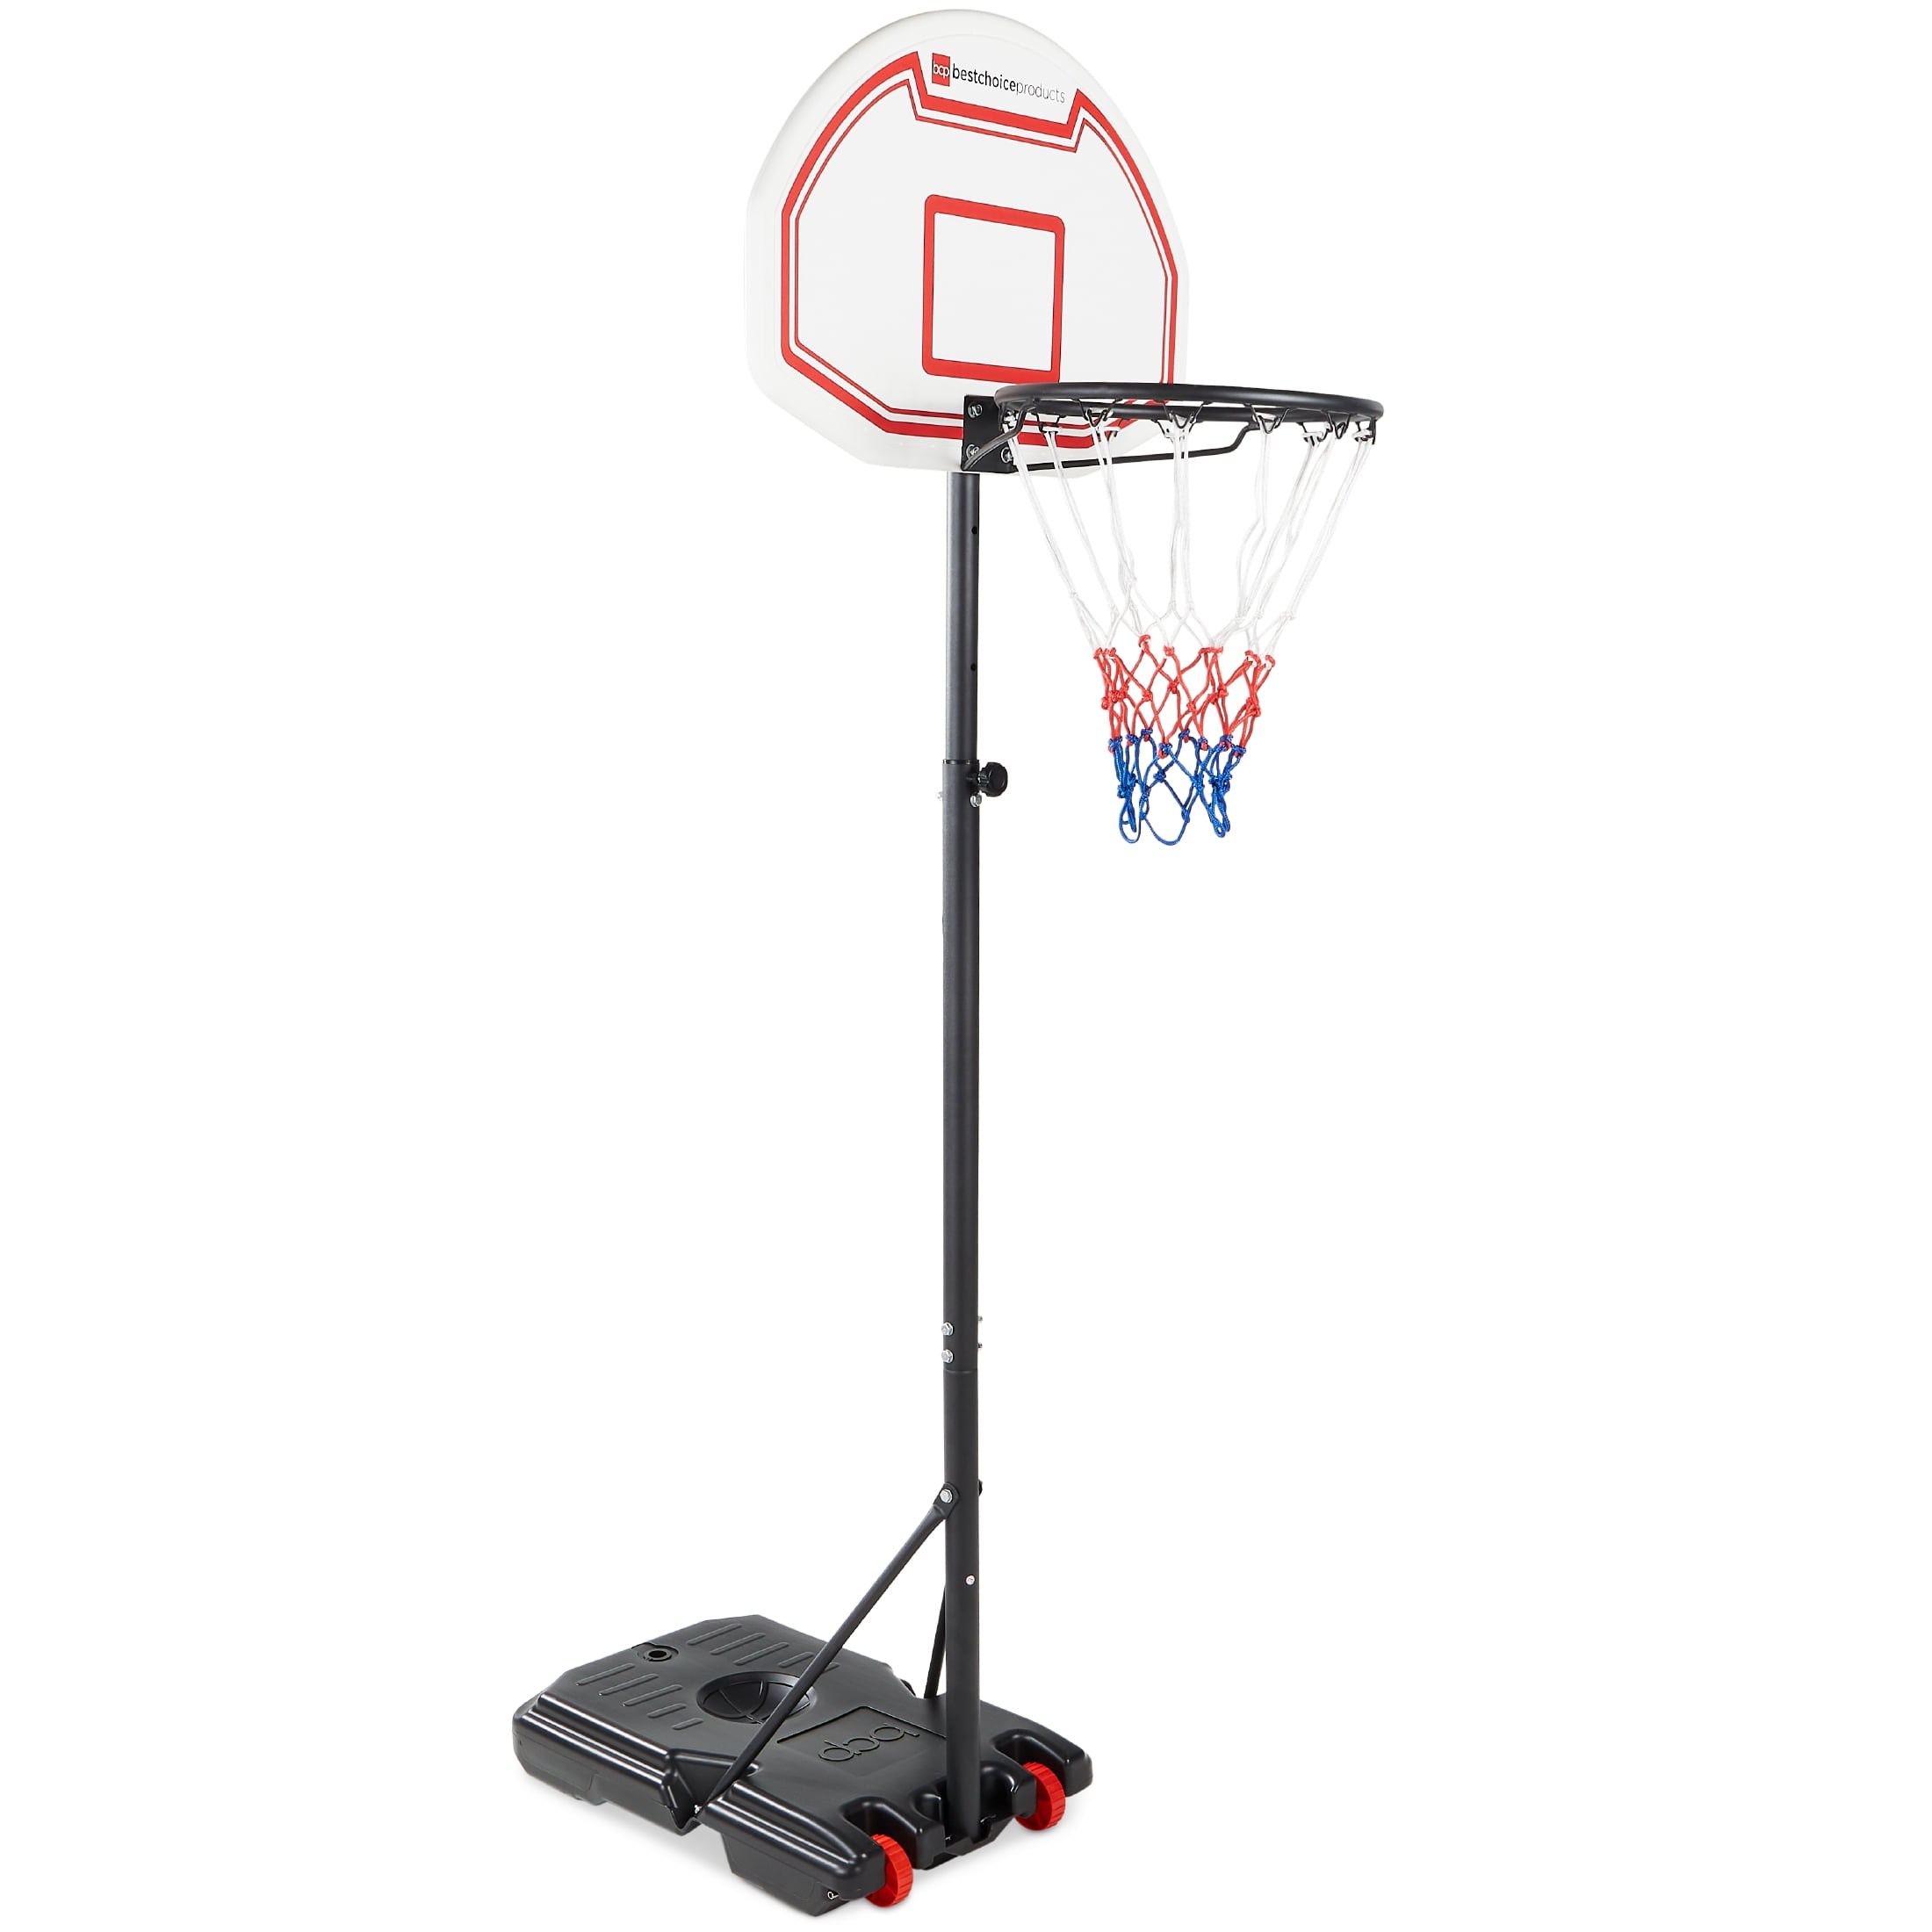 Kids Adjustable Basketball Set Backboard Stand Hoop Hight Toy Indoor Outdoor w 